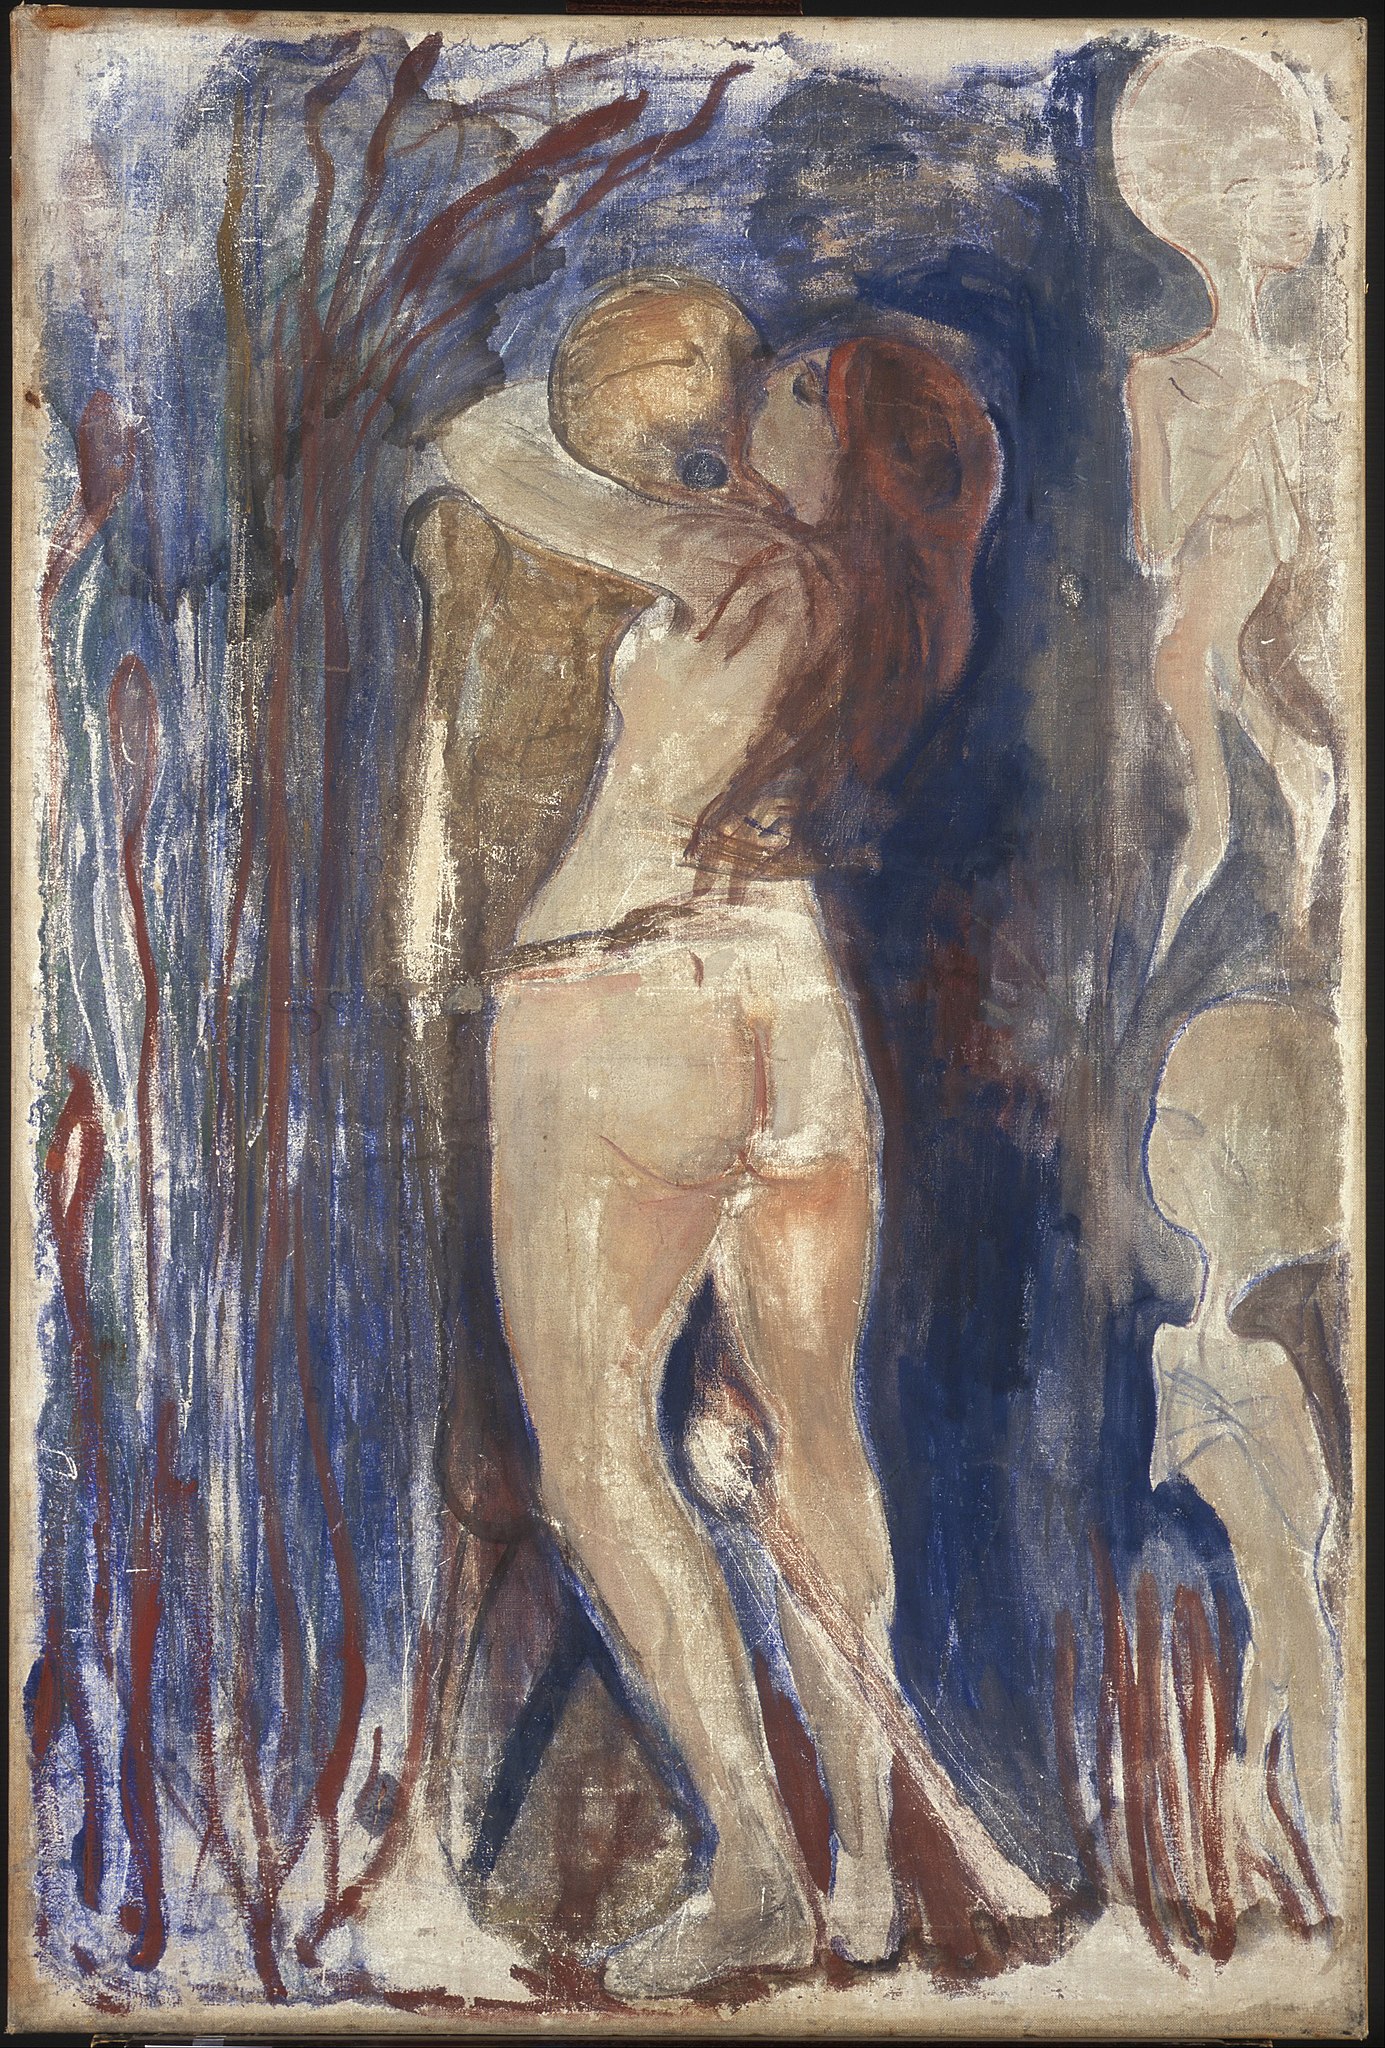 الموت والحياة by Edvard Munch - 1894 م - 86 في 128 سم 